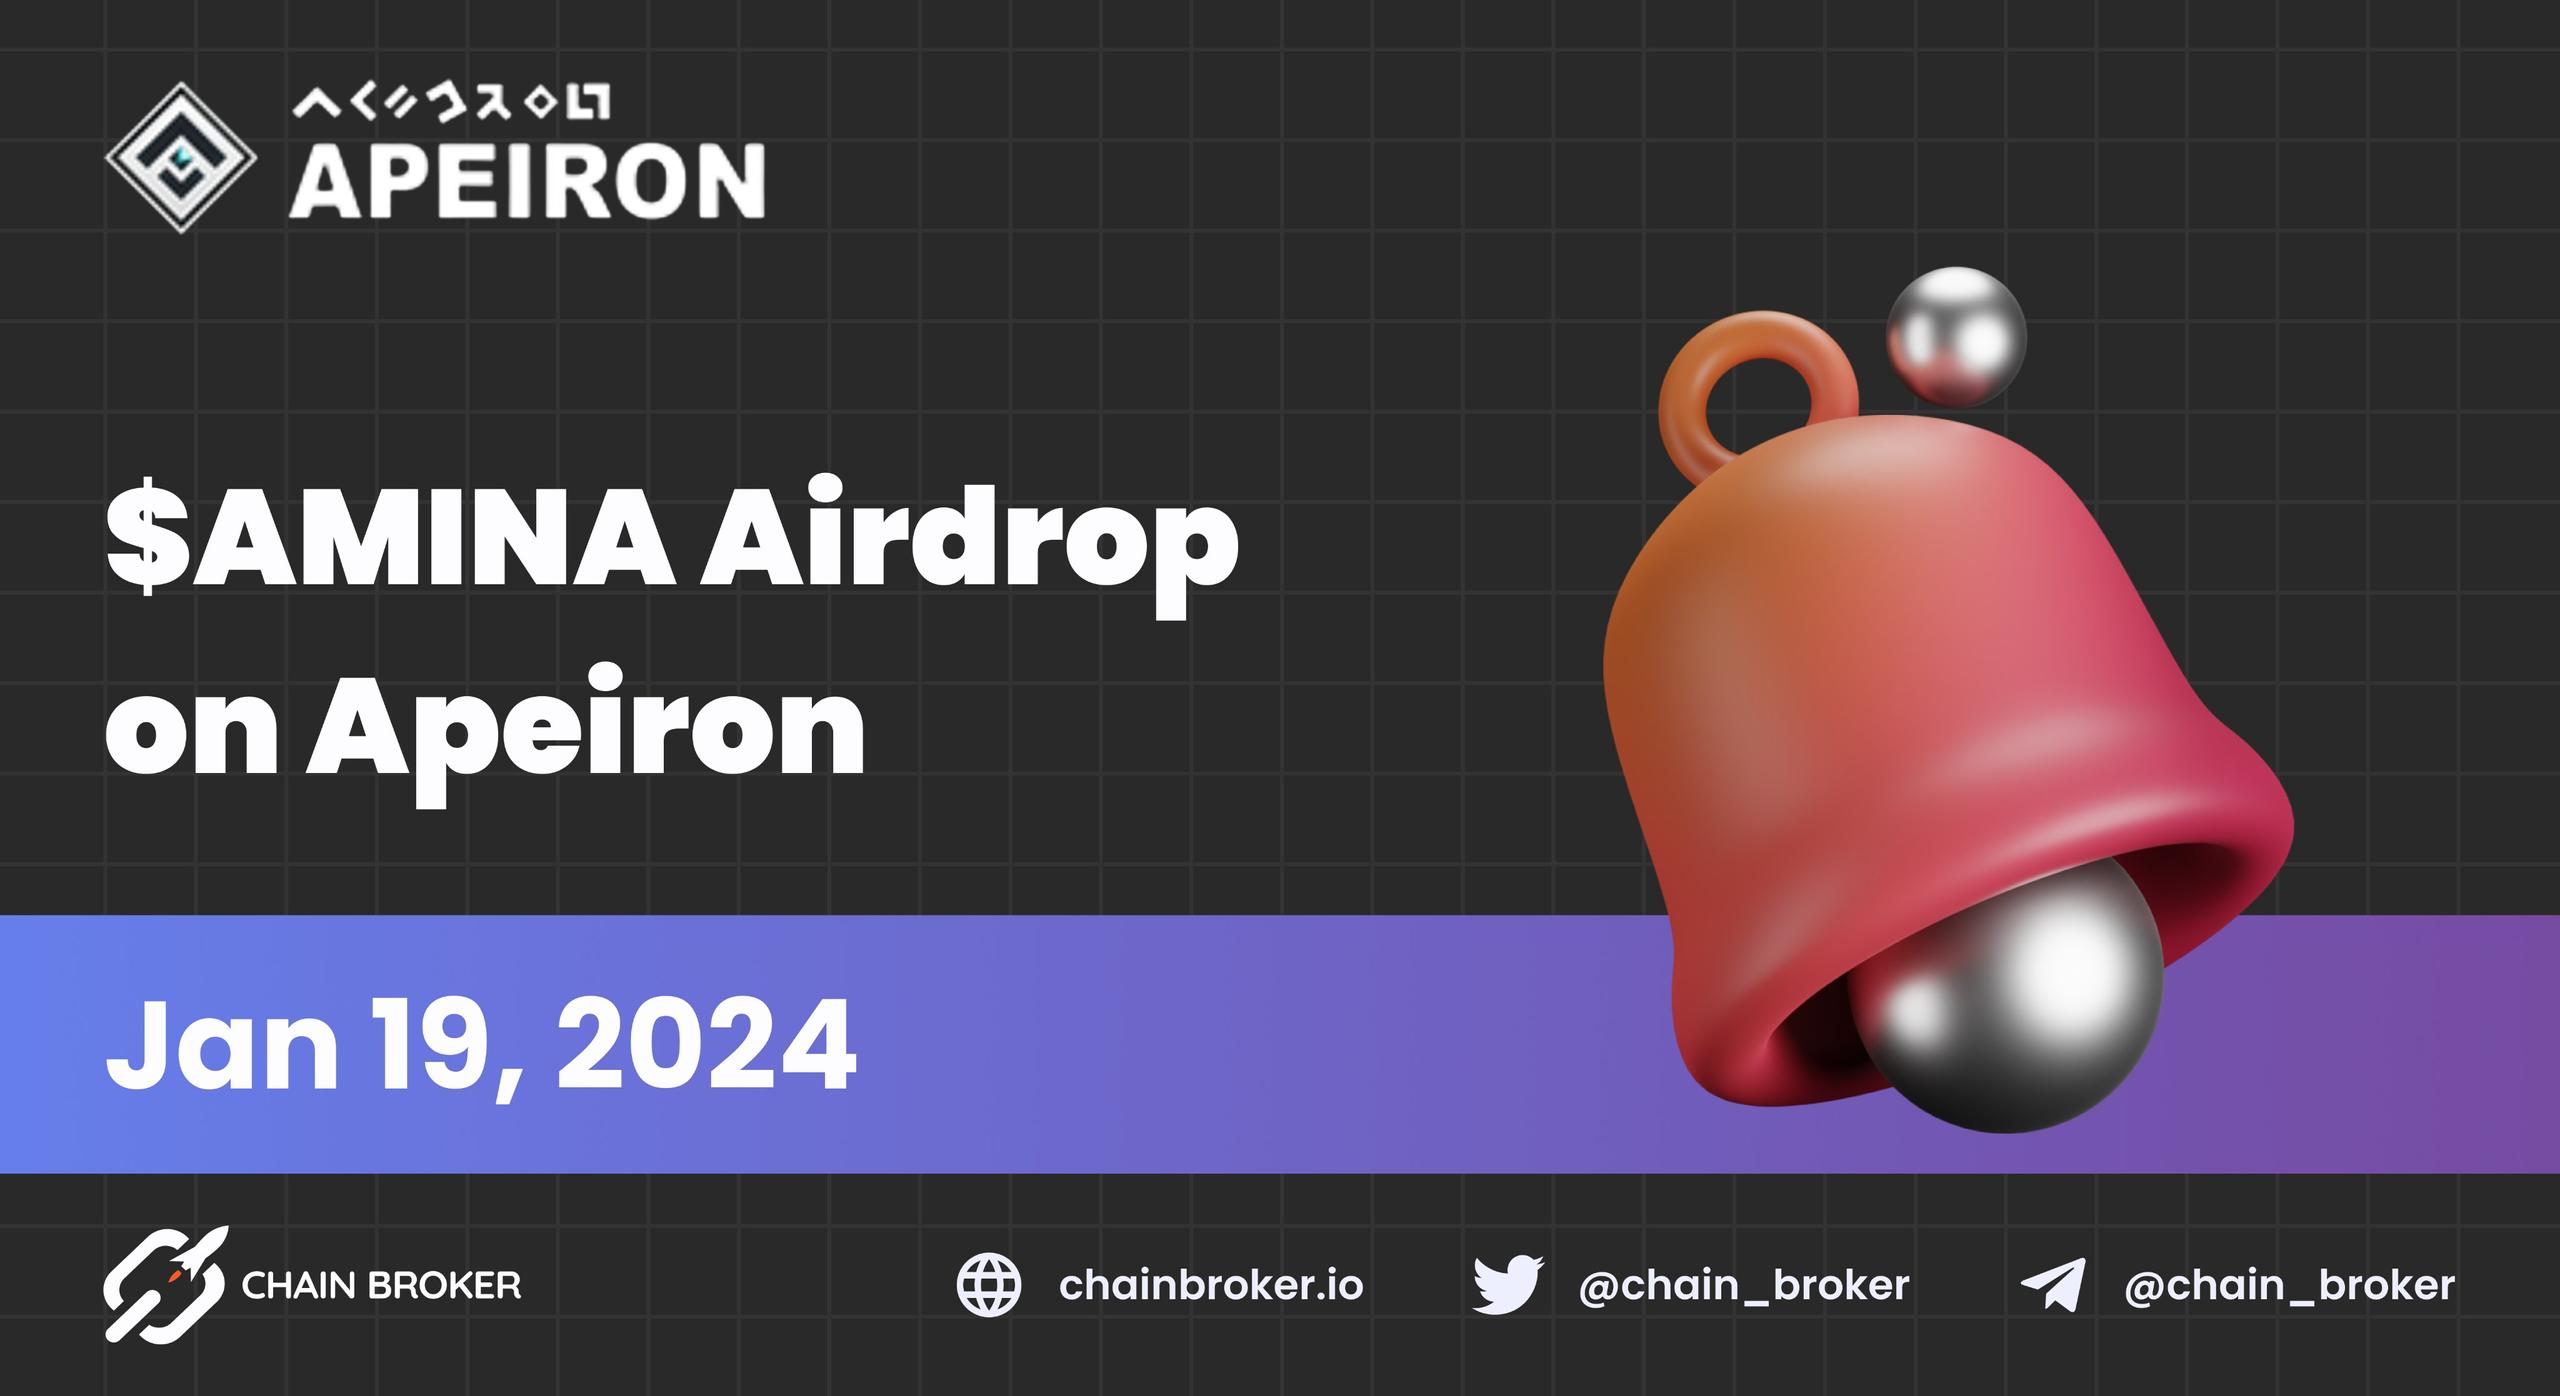 Apeiron Announces $AMINA Airdrop